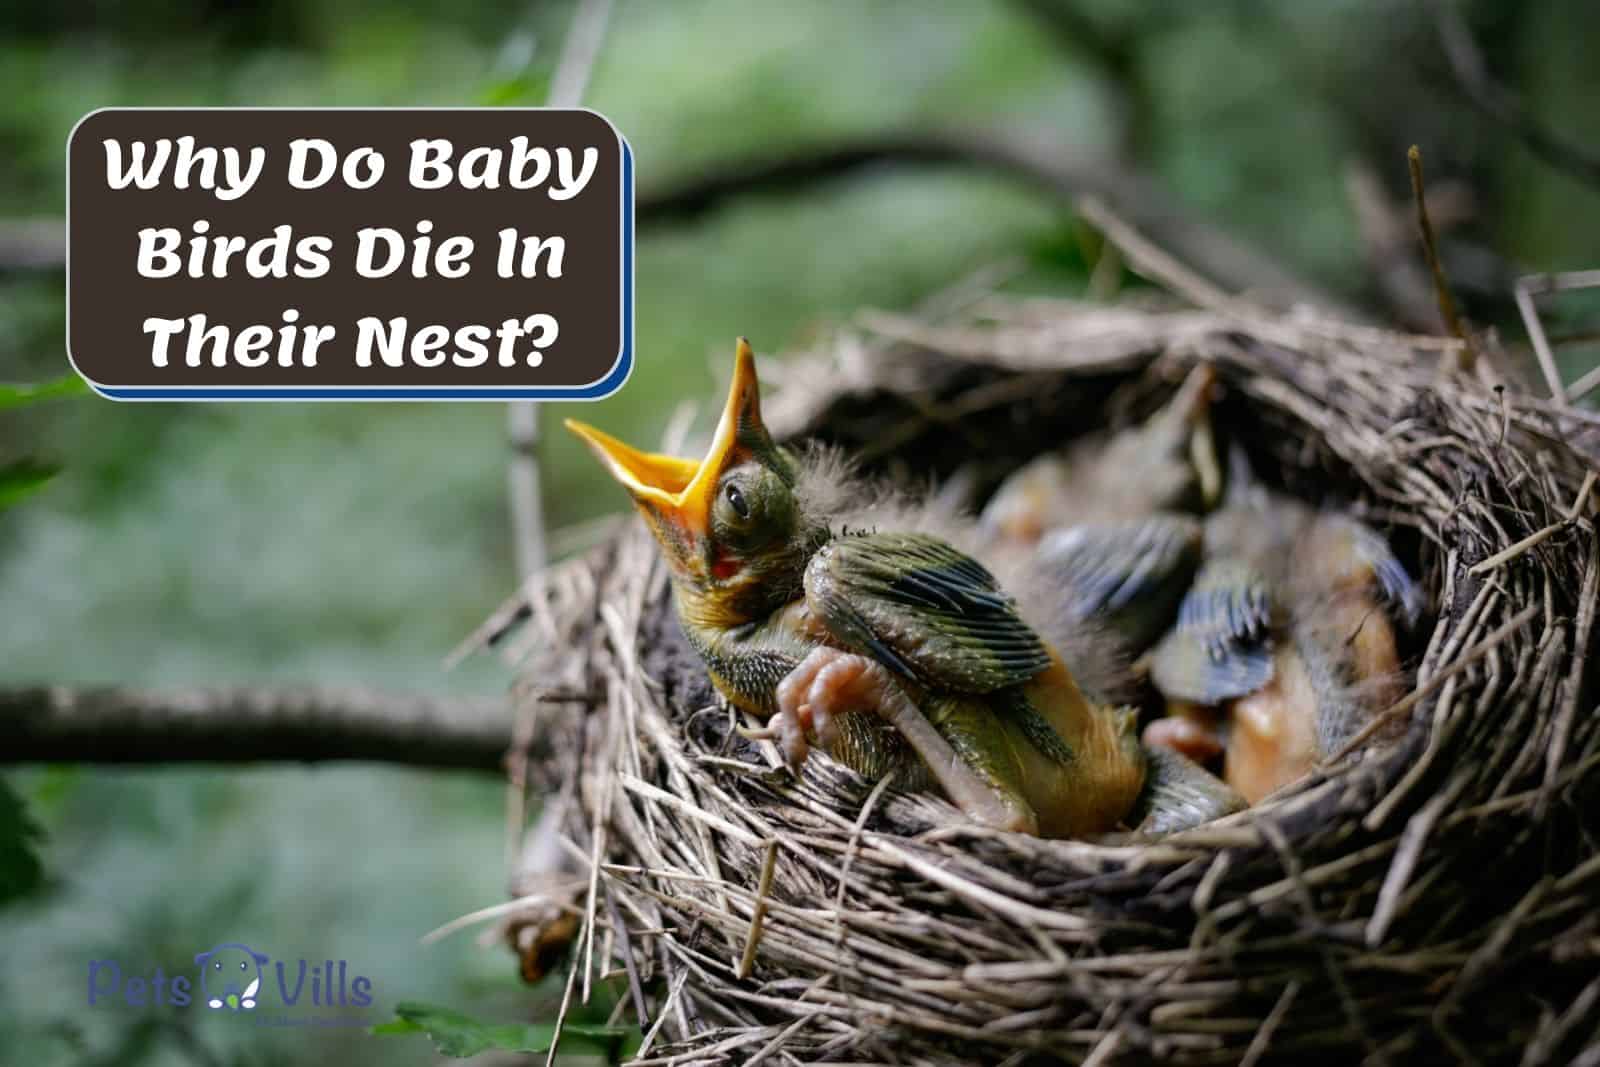 Why do Baby Birds Die in the Nest